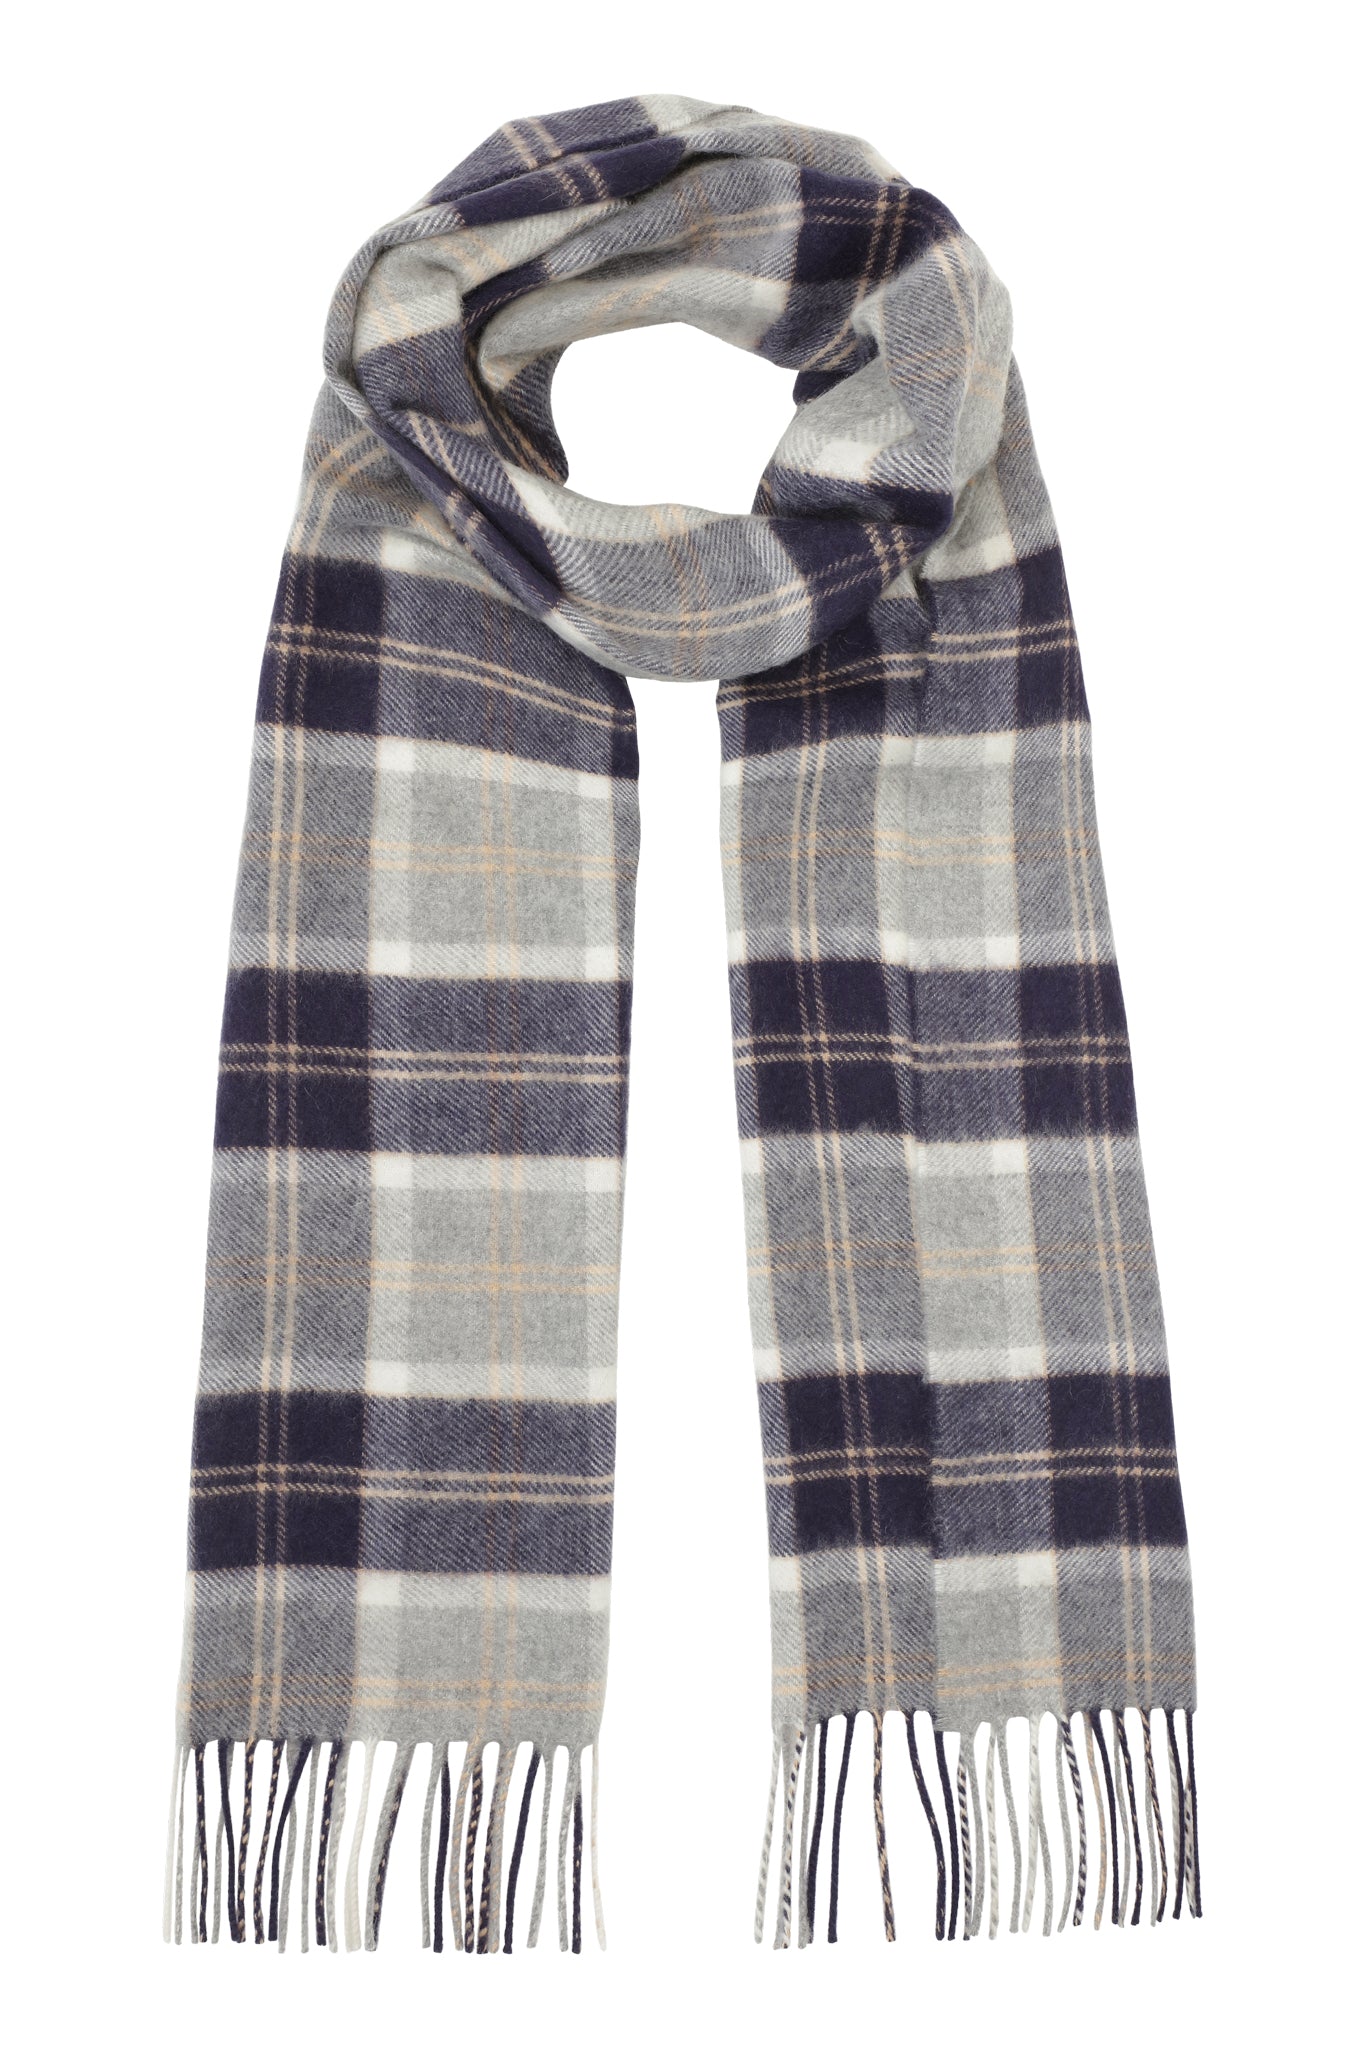 Klassisk vævet cashmere halstørklæde med frynser, fra Skotland - Ternet Sølv Grå og Blå